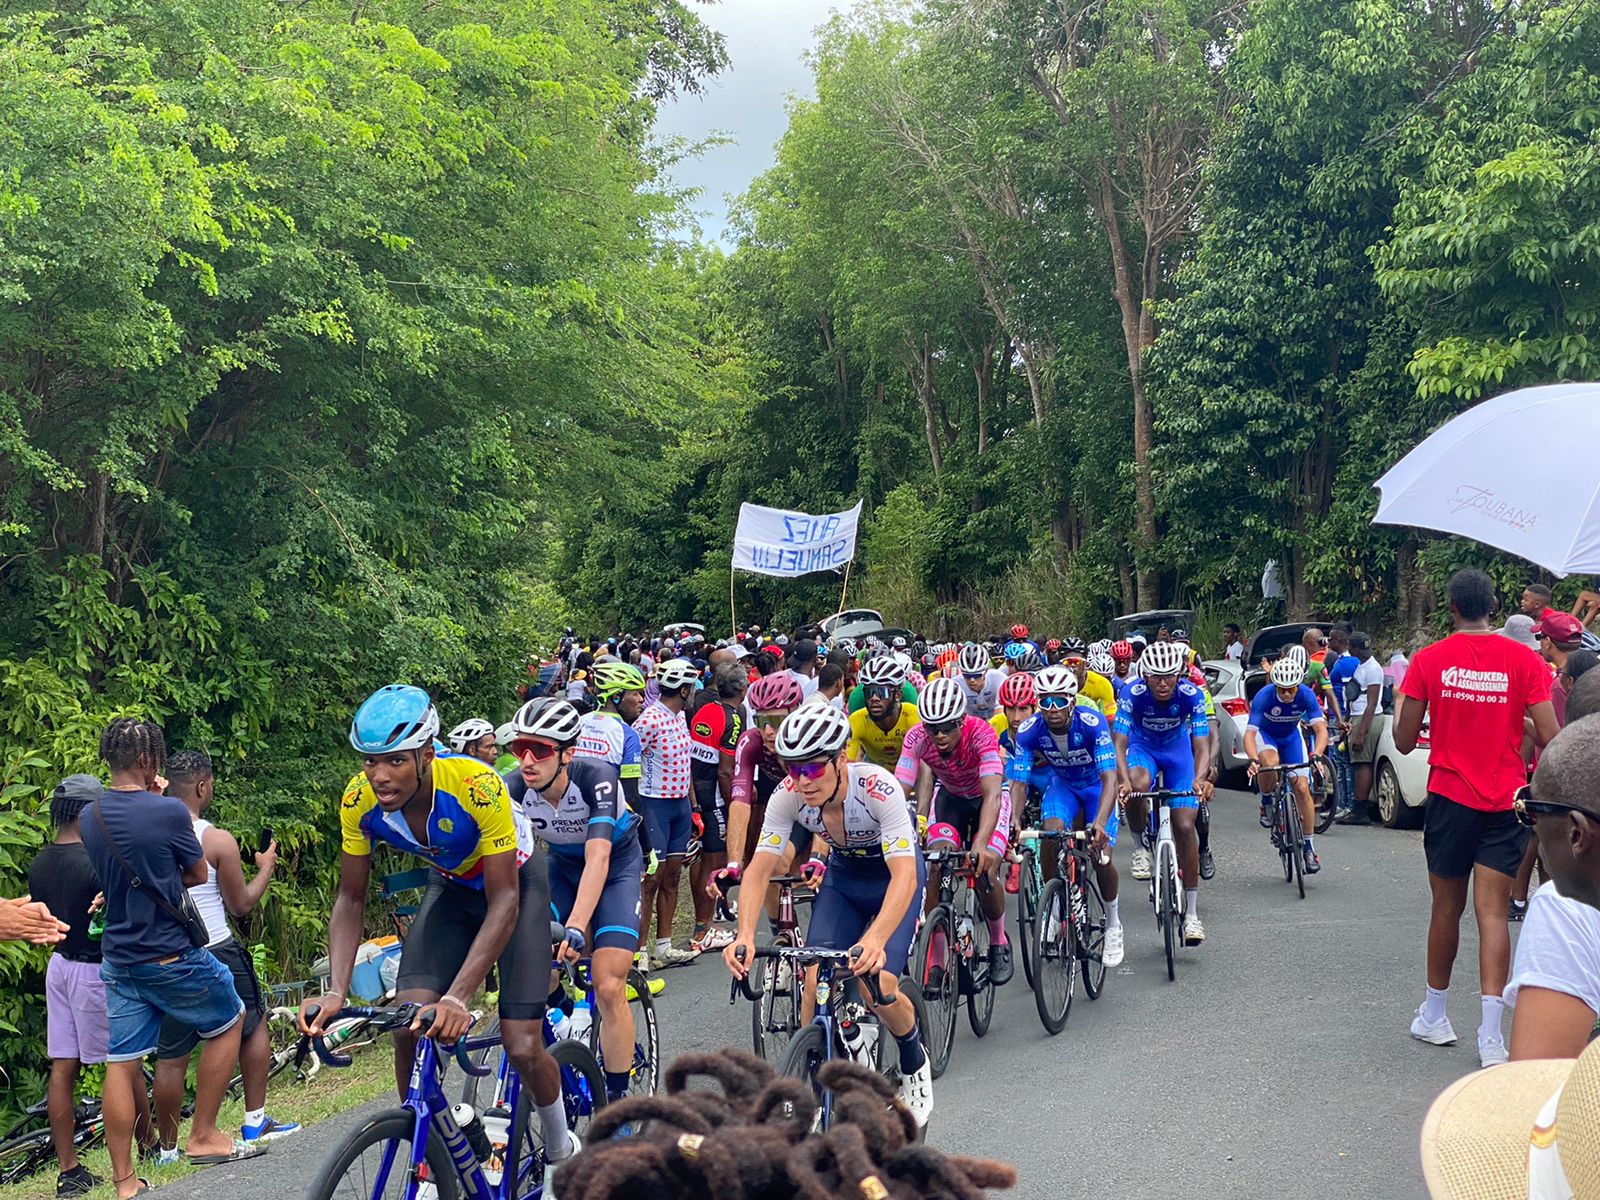     [Direct] Tour cycliste 2022 : Suivez en direct la sixième étape entre Capesterre et Gourbeyre

